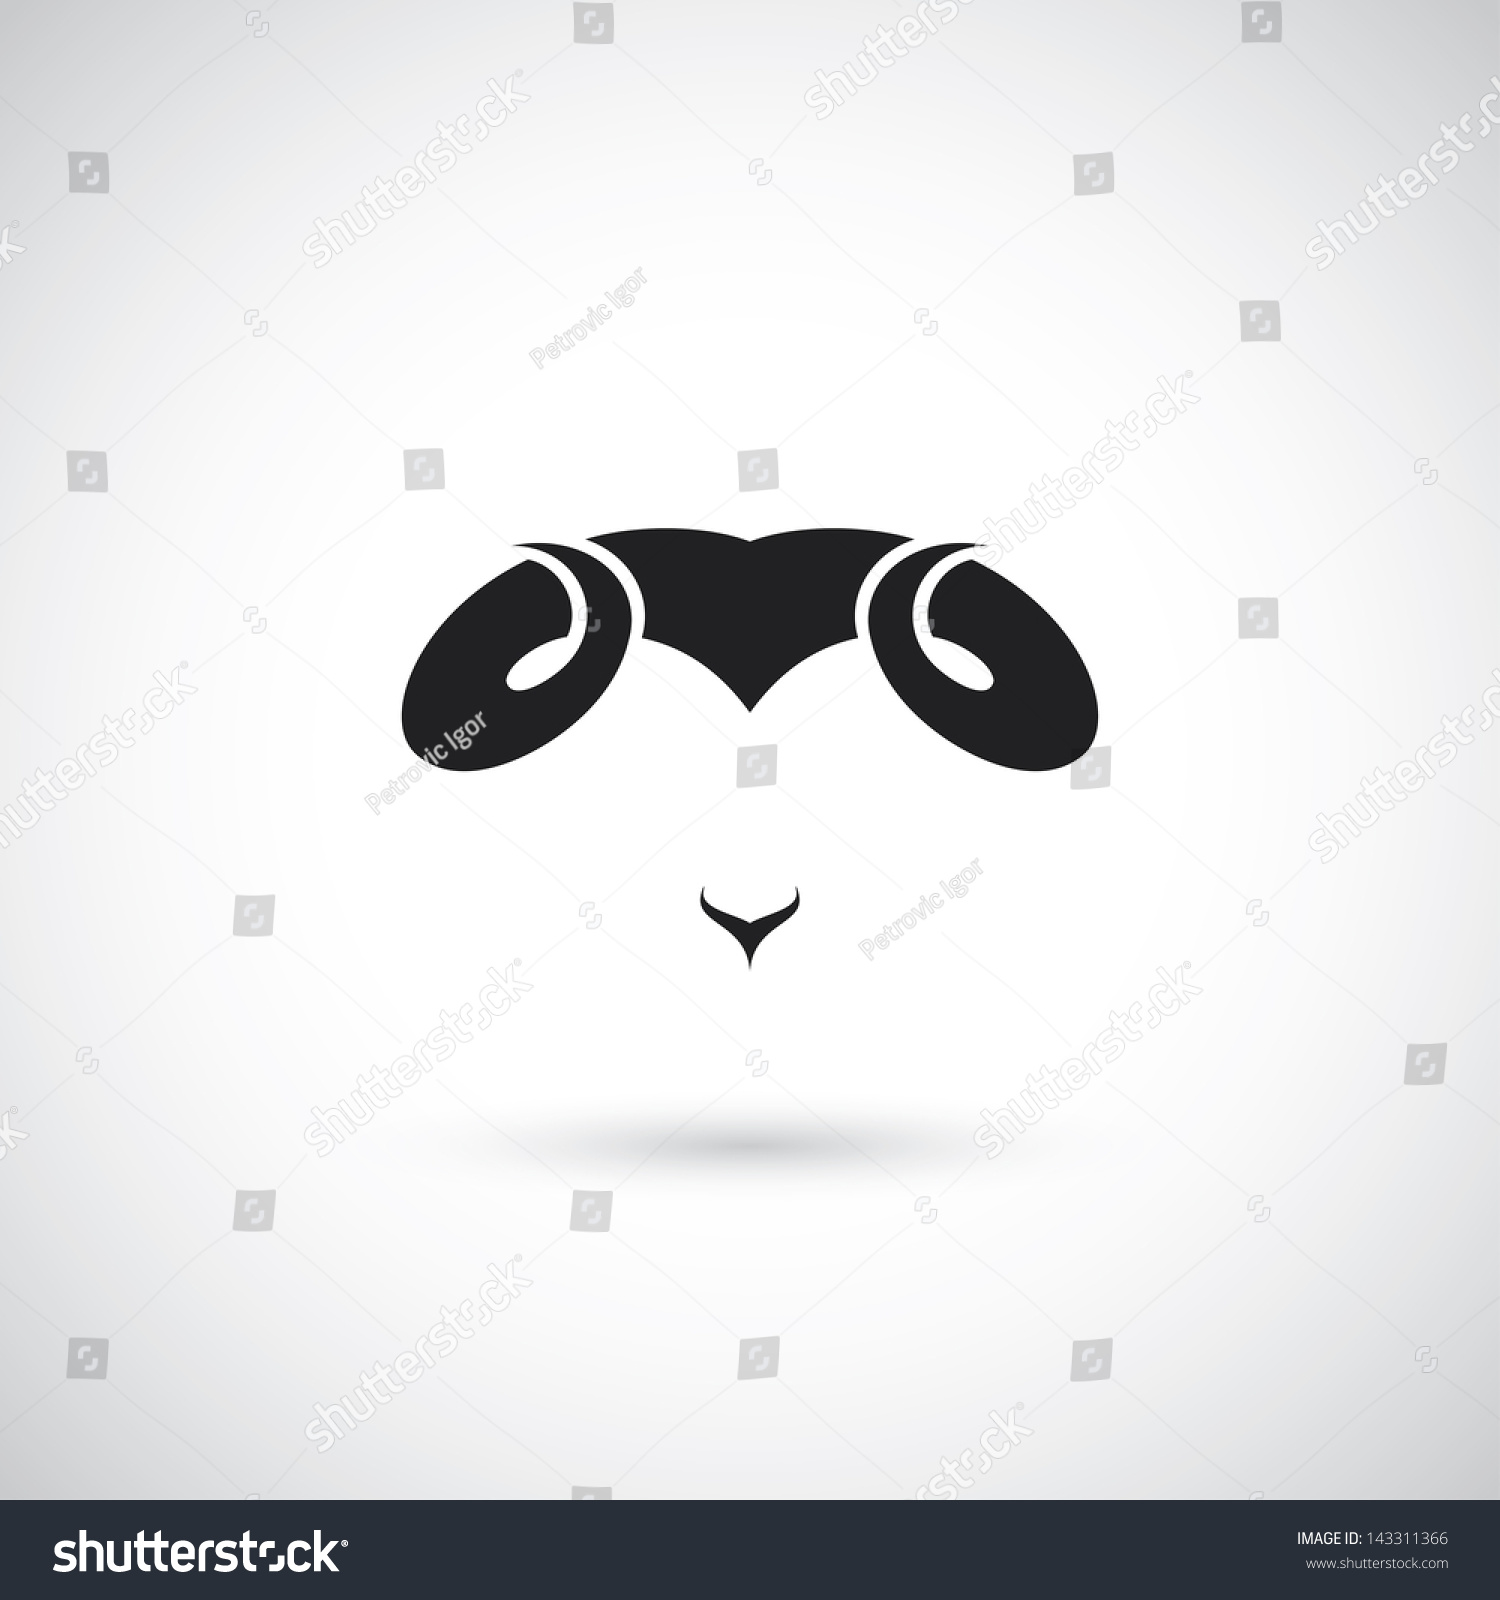 Ram Horns - Vector Illustration - 143311366 : Shutterstock